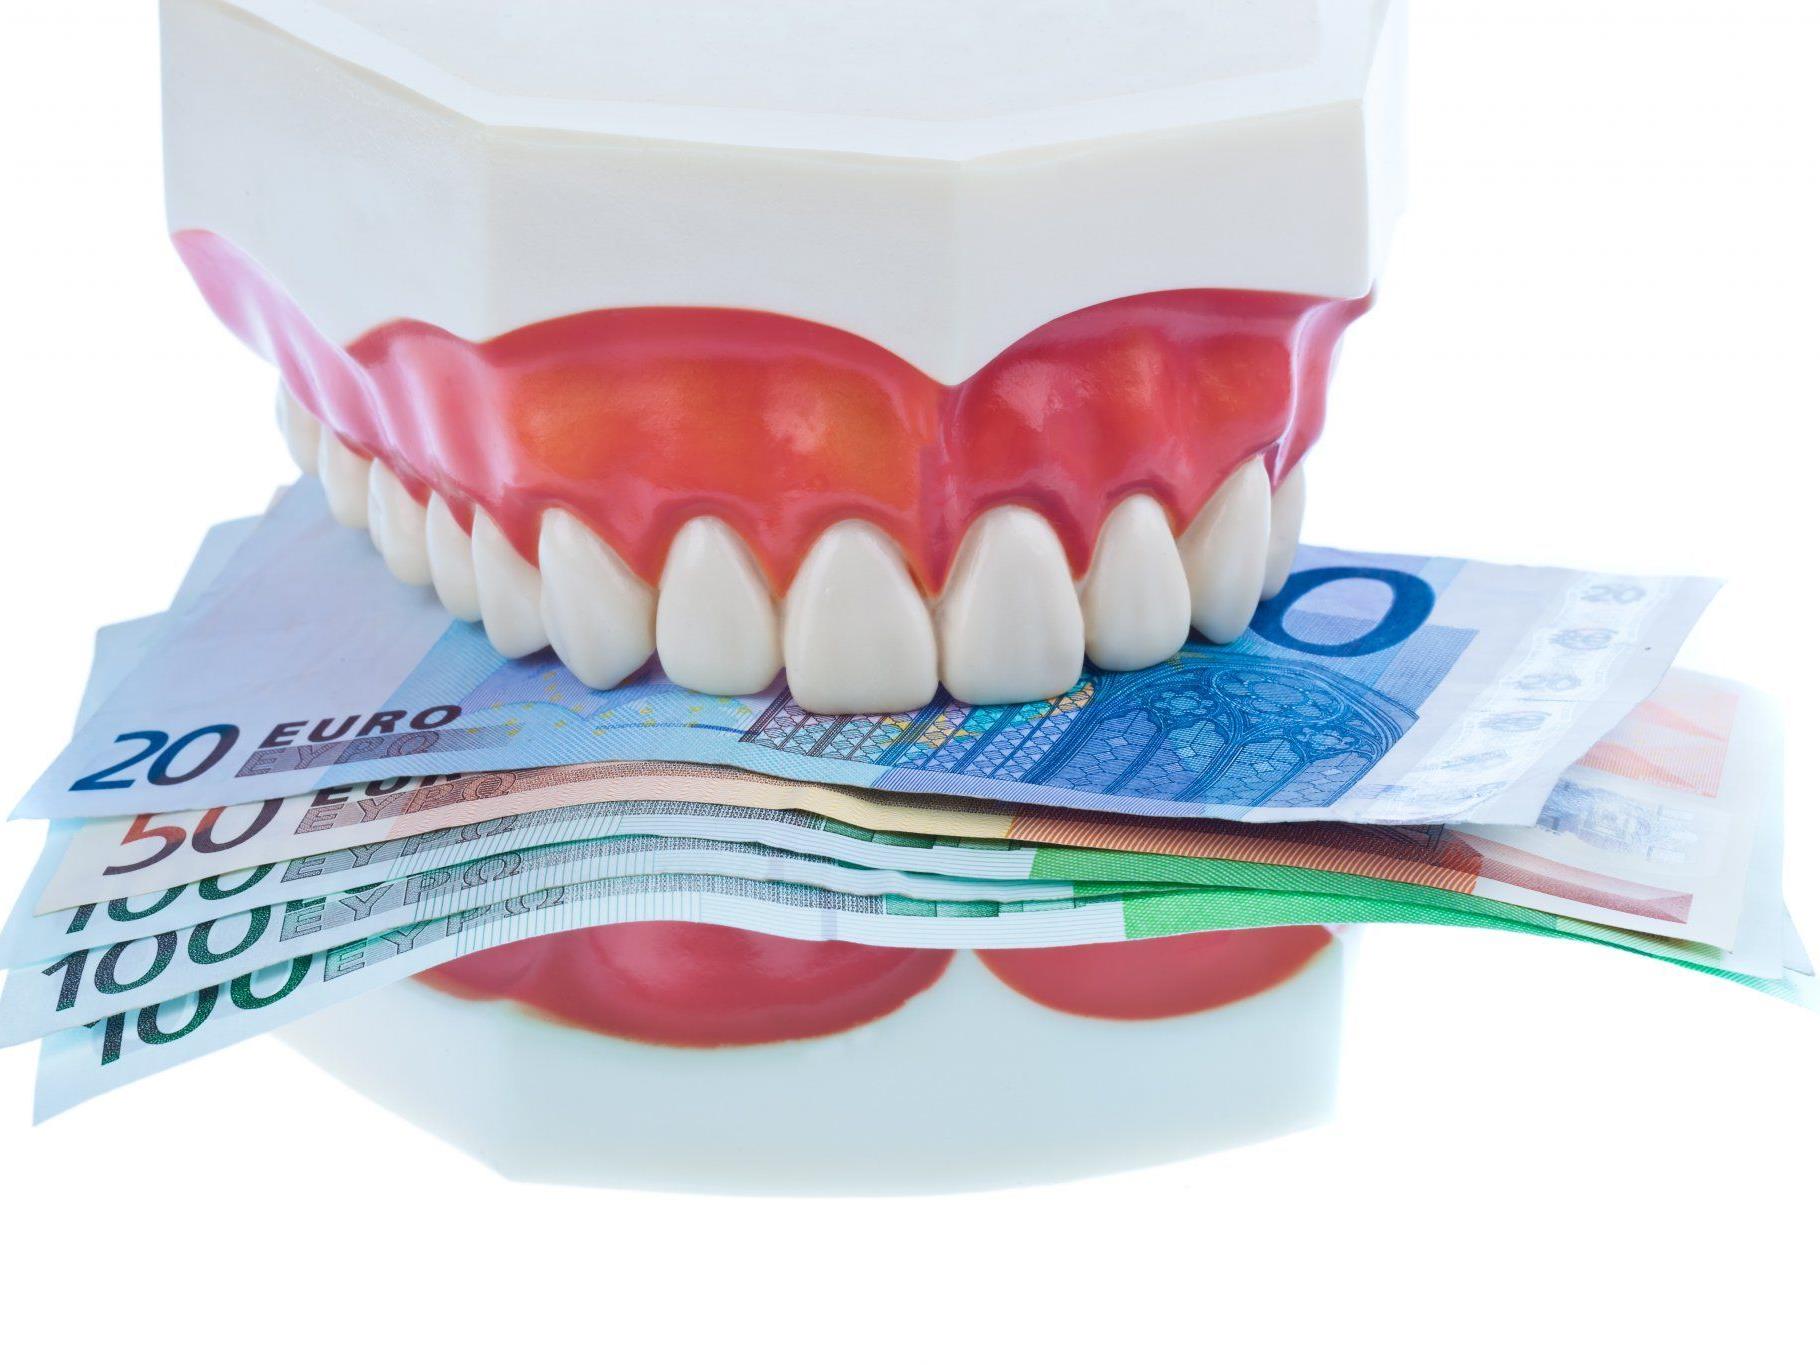 Viel Geld sind die schönen, neuen Zähne des Prinzen nach der Zahnbehandlung wert